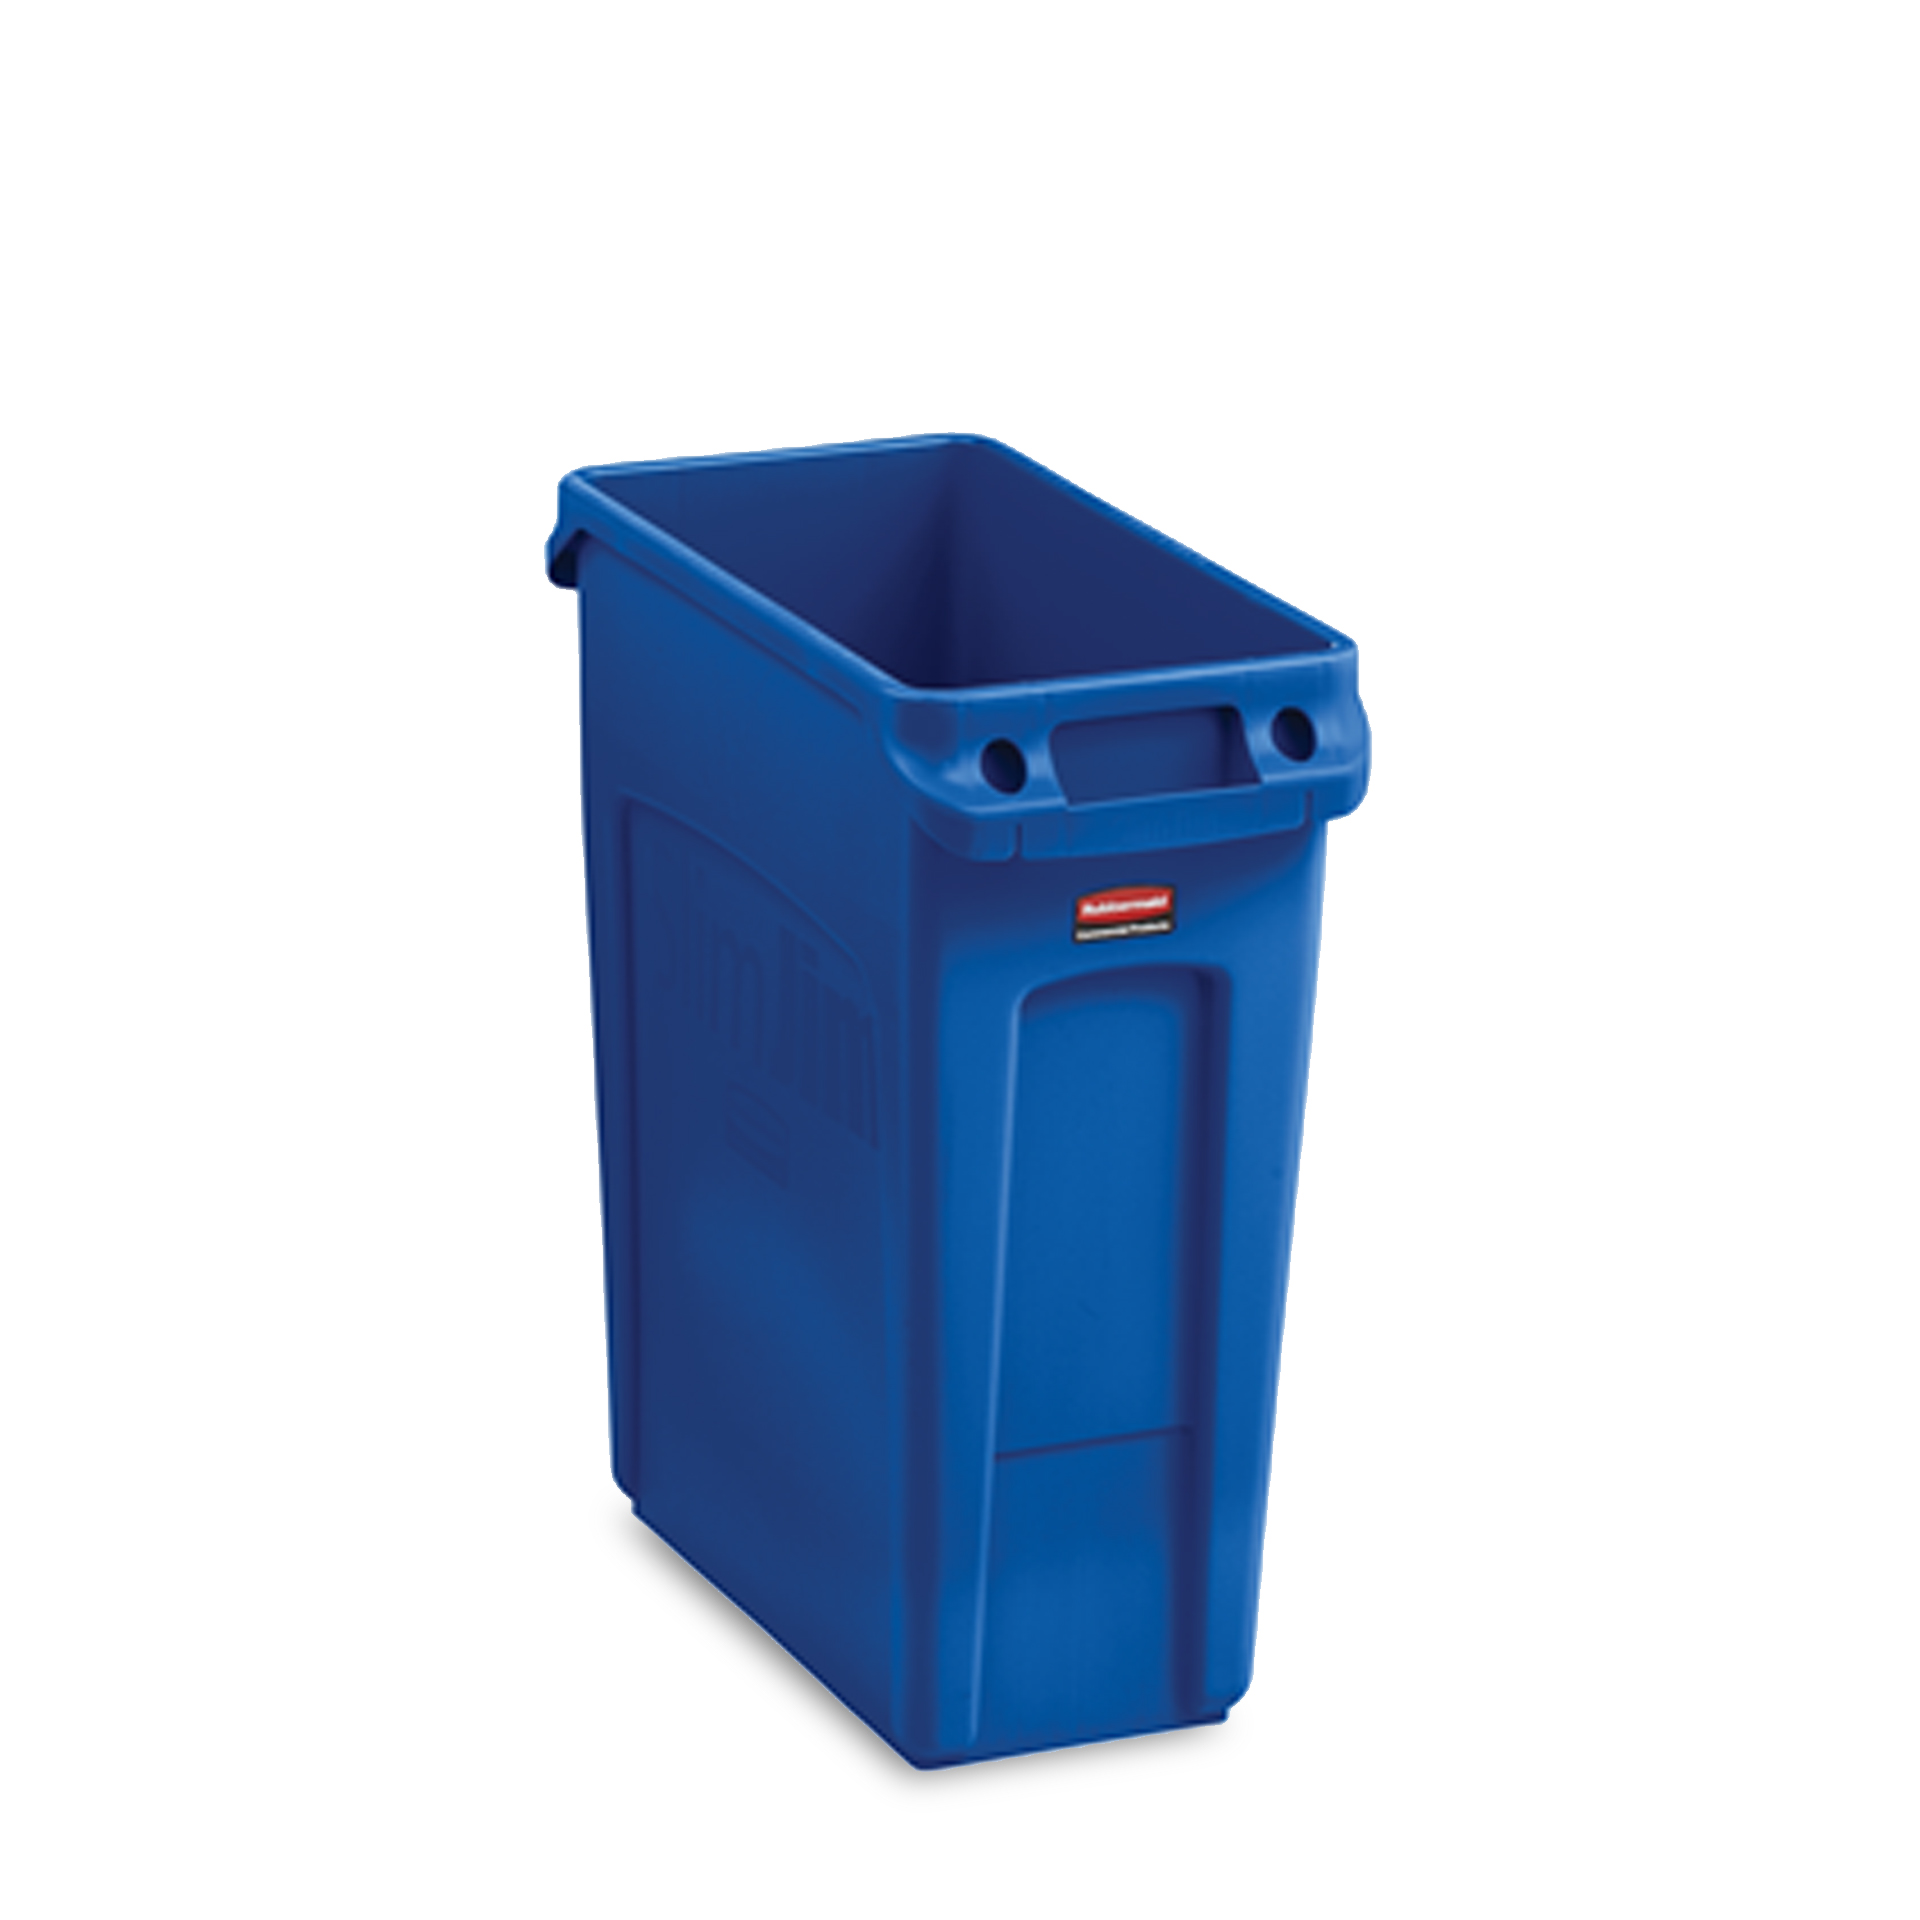 ถังขยะอเนกประสงค์ทรงสูง SLIM JIM® ขนาด 60.6 ลิตร สีน้ำเงิน